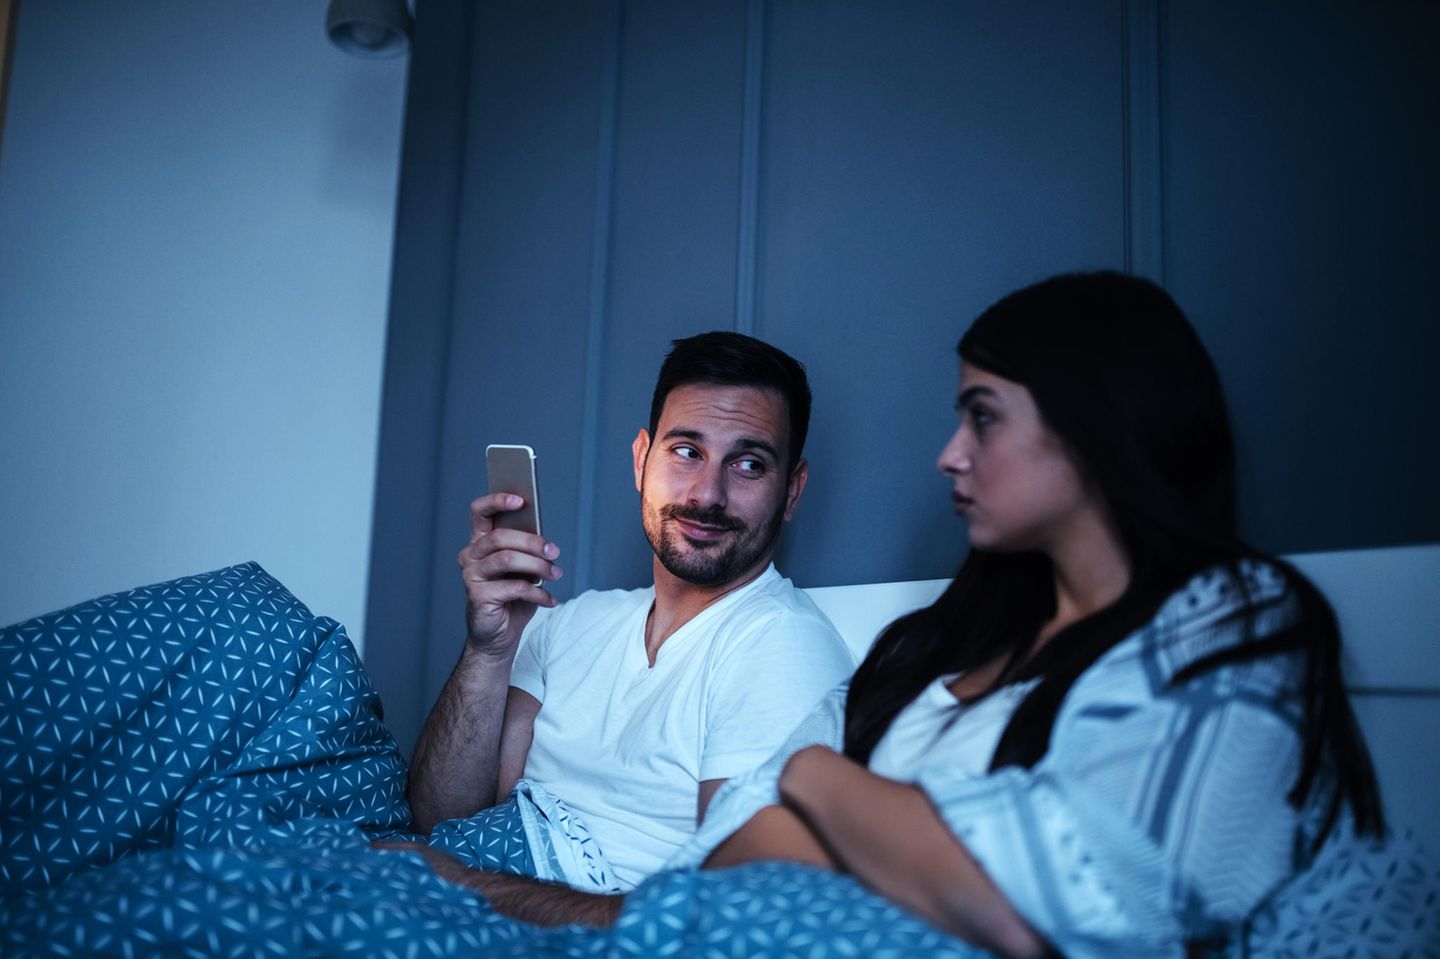 Mein Mann und sein Handy – in unserem Bett